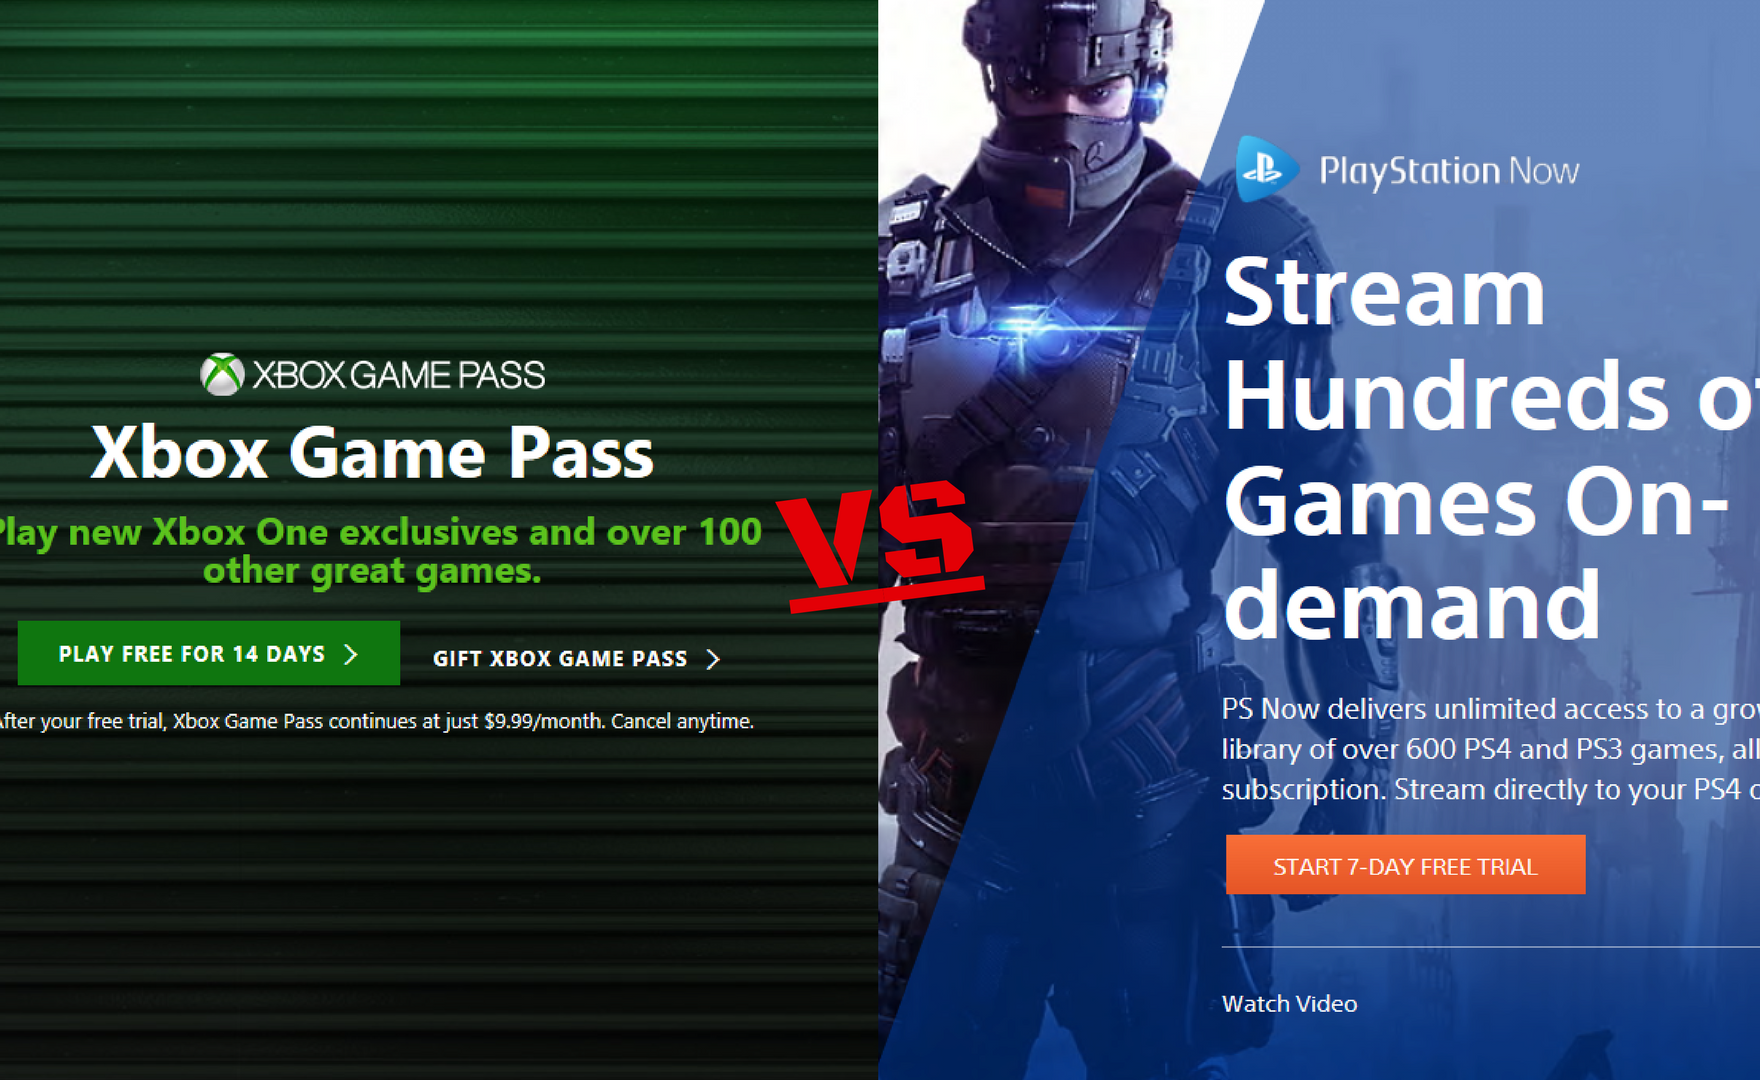 PS Now e Xbox Game Pass stanno usando lo stesso slogan?